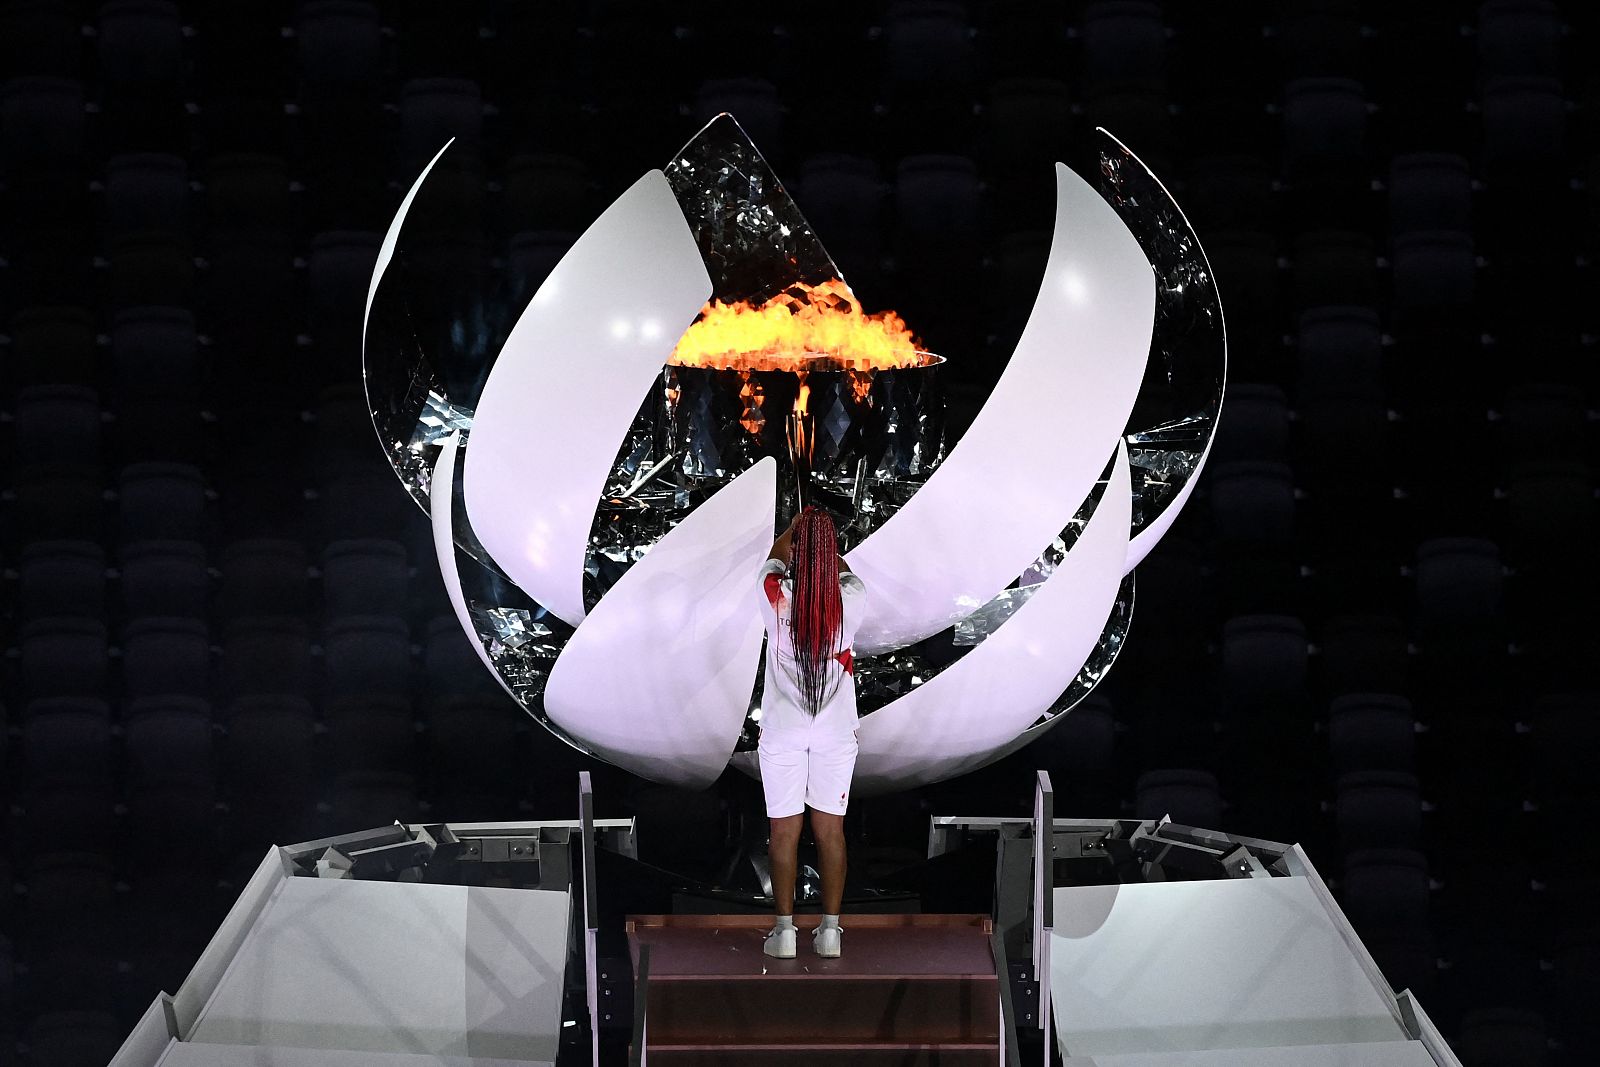 La tenista Nº2 del ránking mundial, la japonesa Naomi Osaka, ha sido la encargada de encender el pebetero olímpico de Tokyo 2020